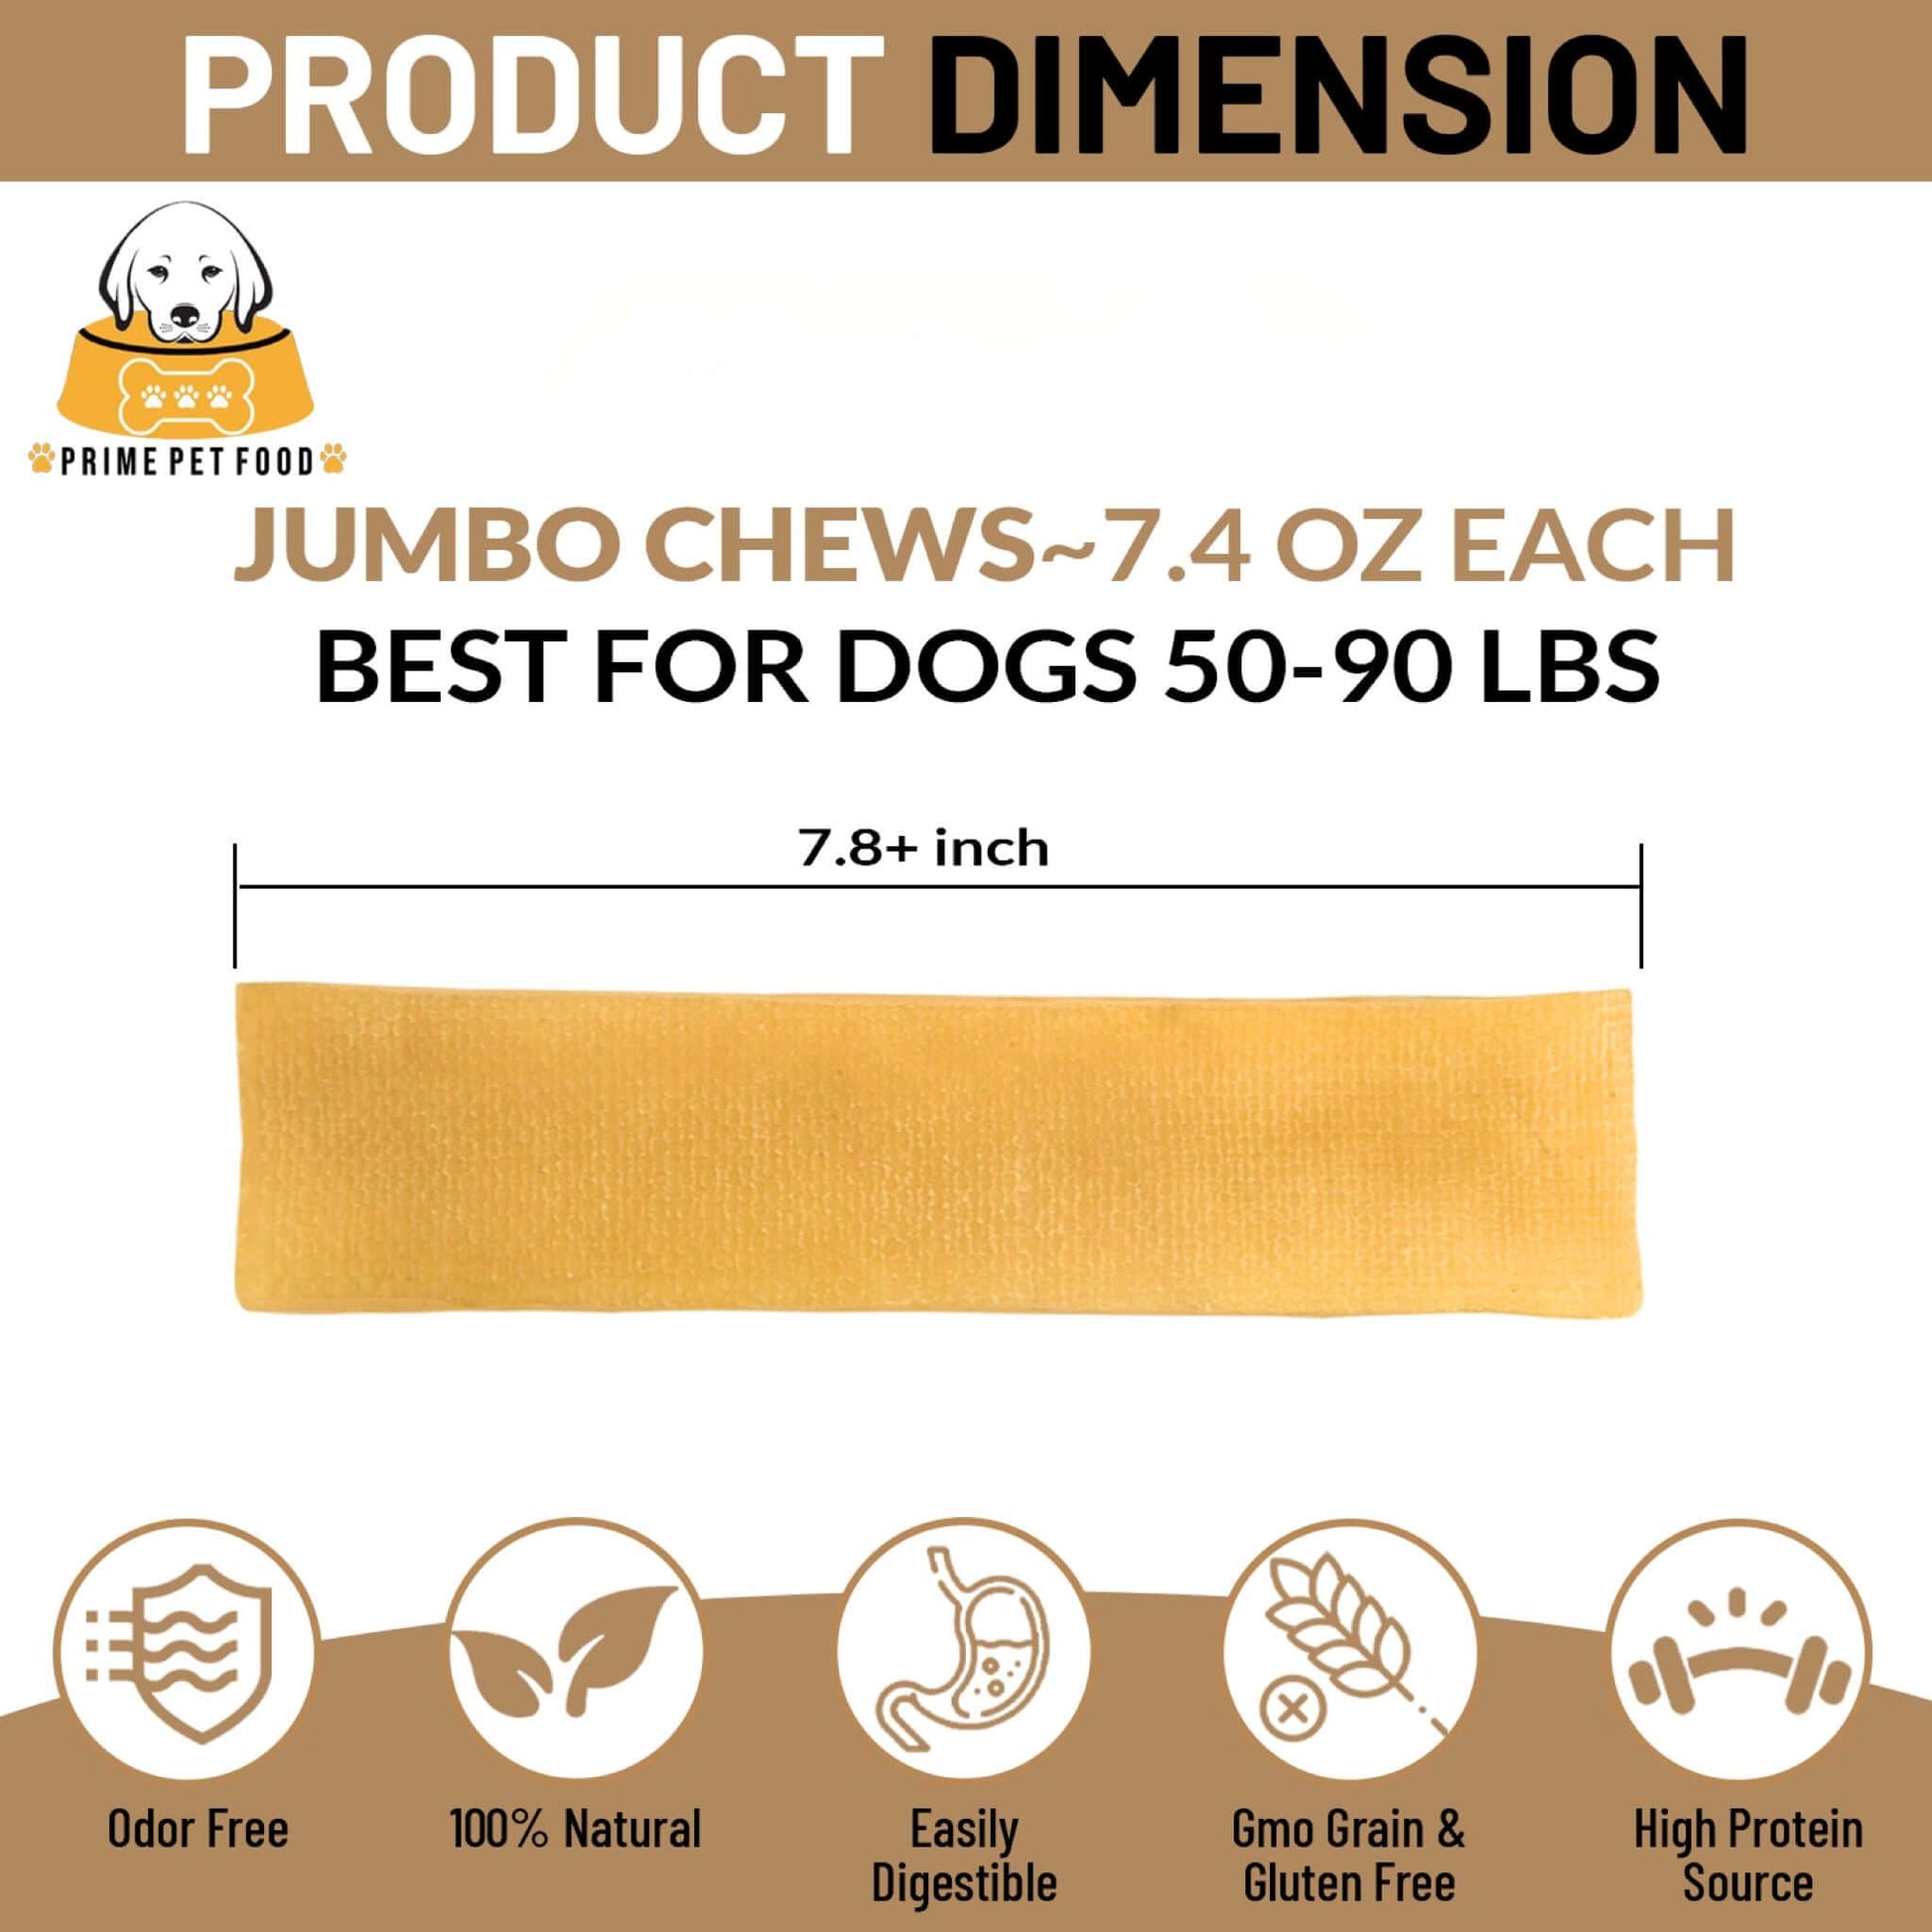 NATURAL HIMALAYAN YAK CHEESE JUMBO CHEWS Pet Supplies Prime Pet Food 